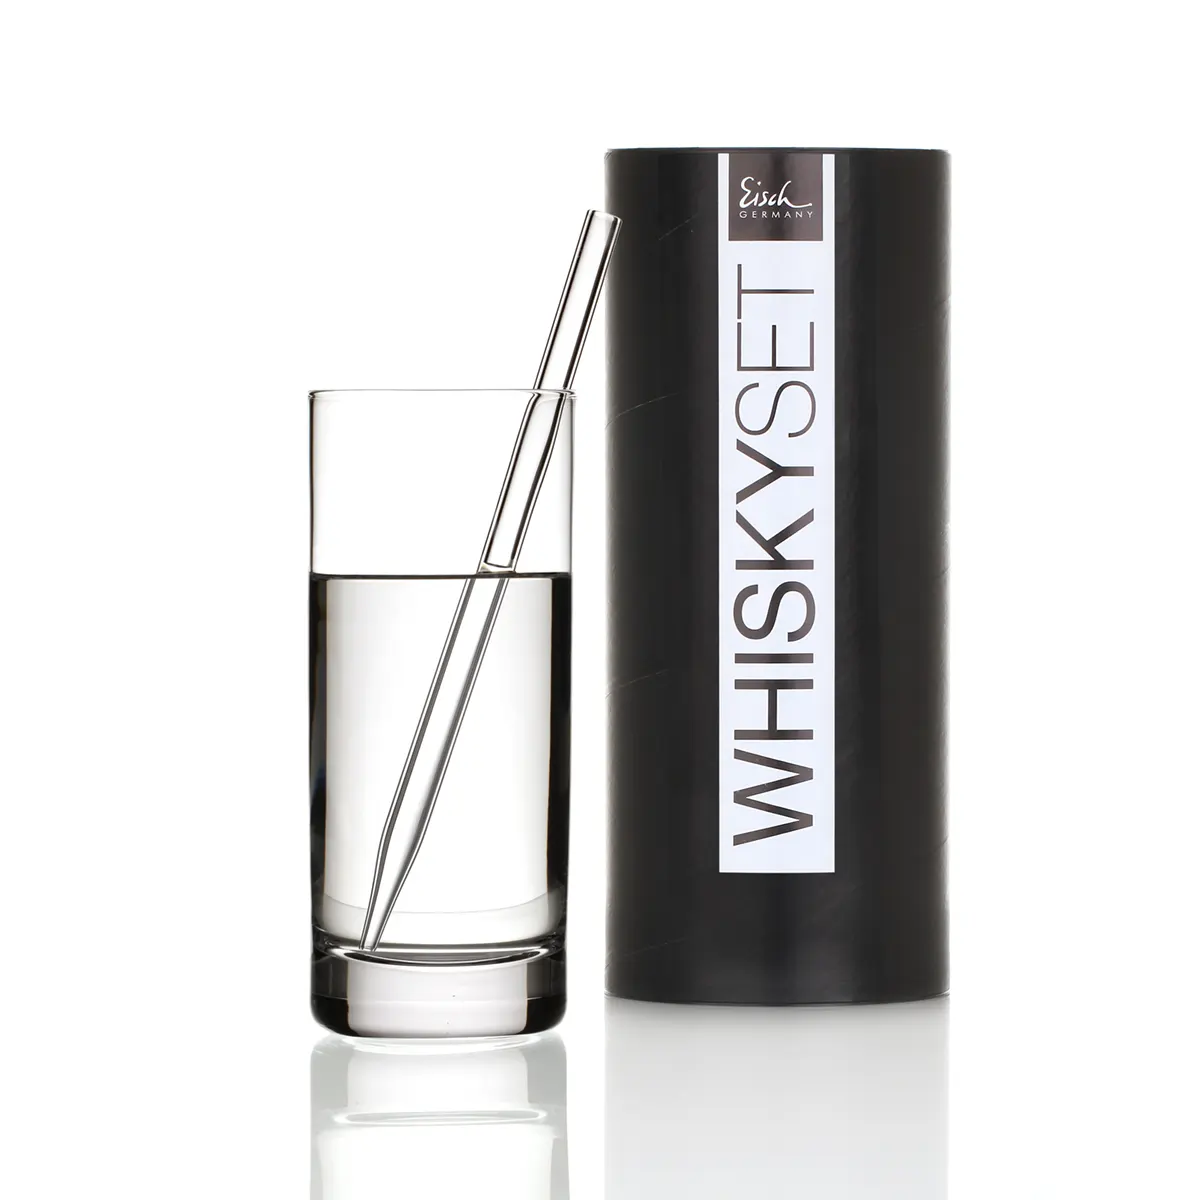 Eisch Whisky Tasting Set - Kristallglas Pipette & Wasserglas in Geschenkröhre